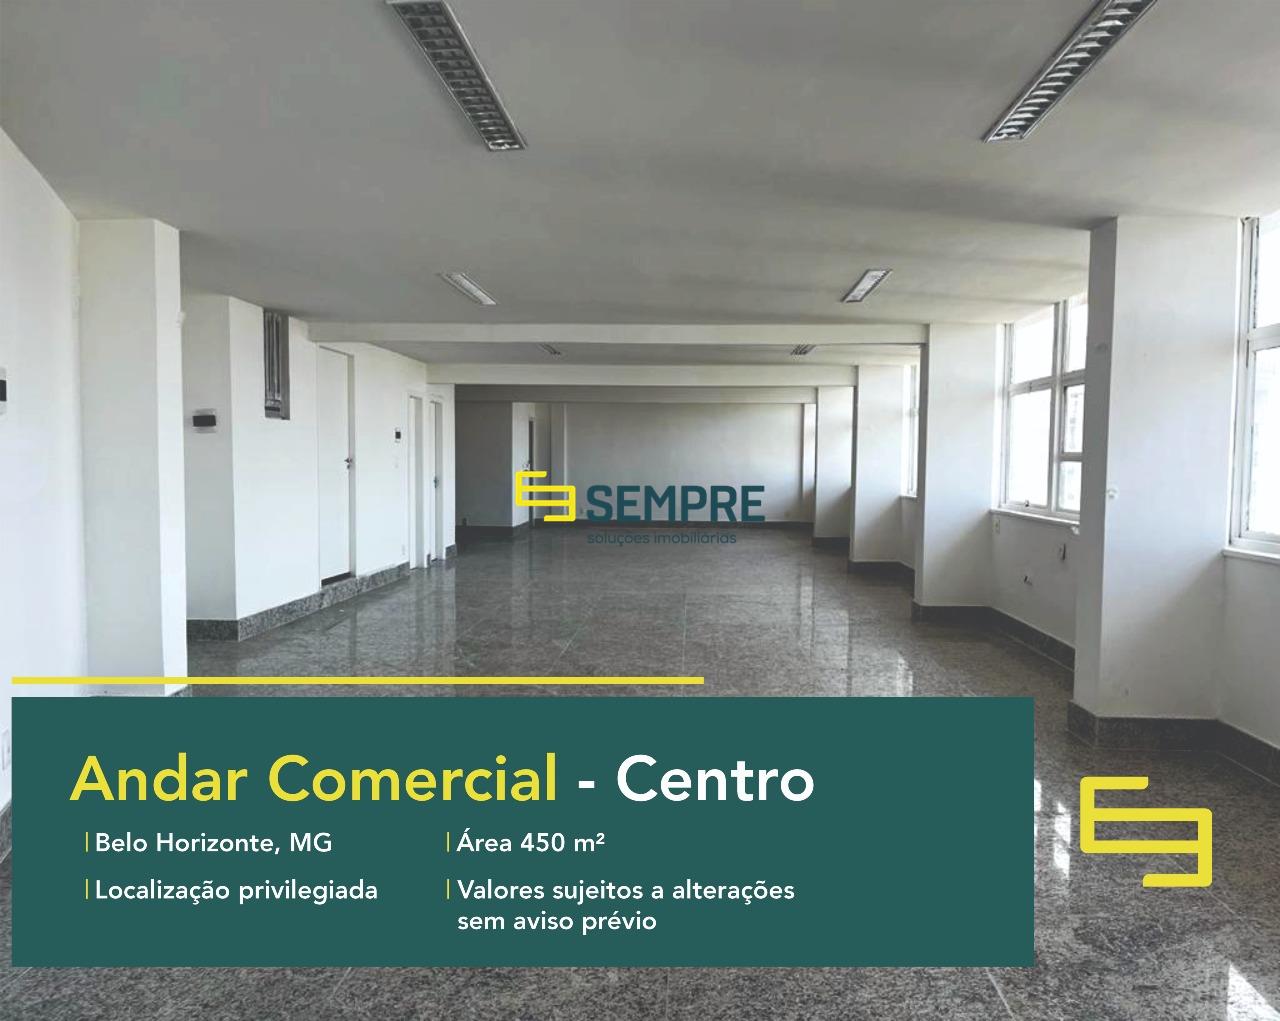 Andar comercial para alugar no Centro de Belo Horizonte, em excelente localização! O estabelecimento conta com área de 450 m².